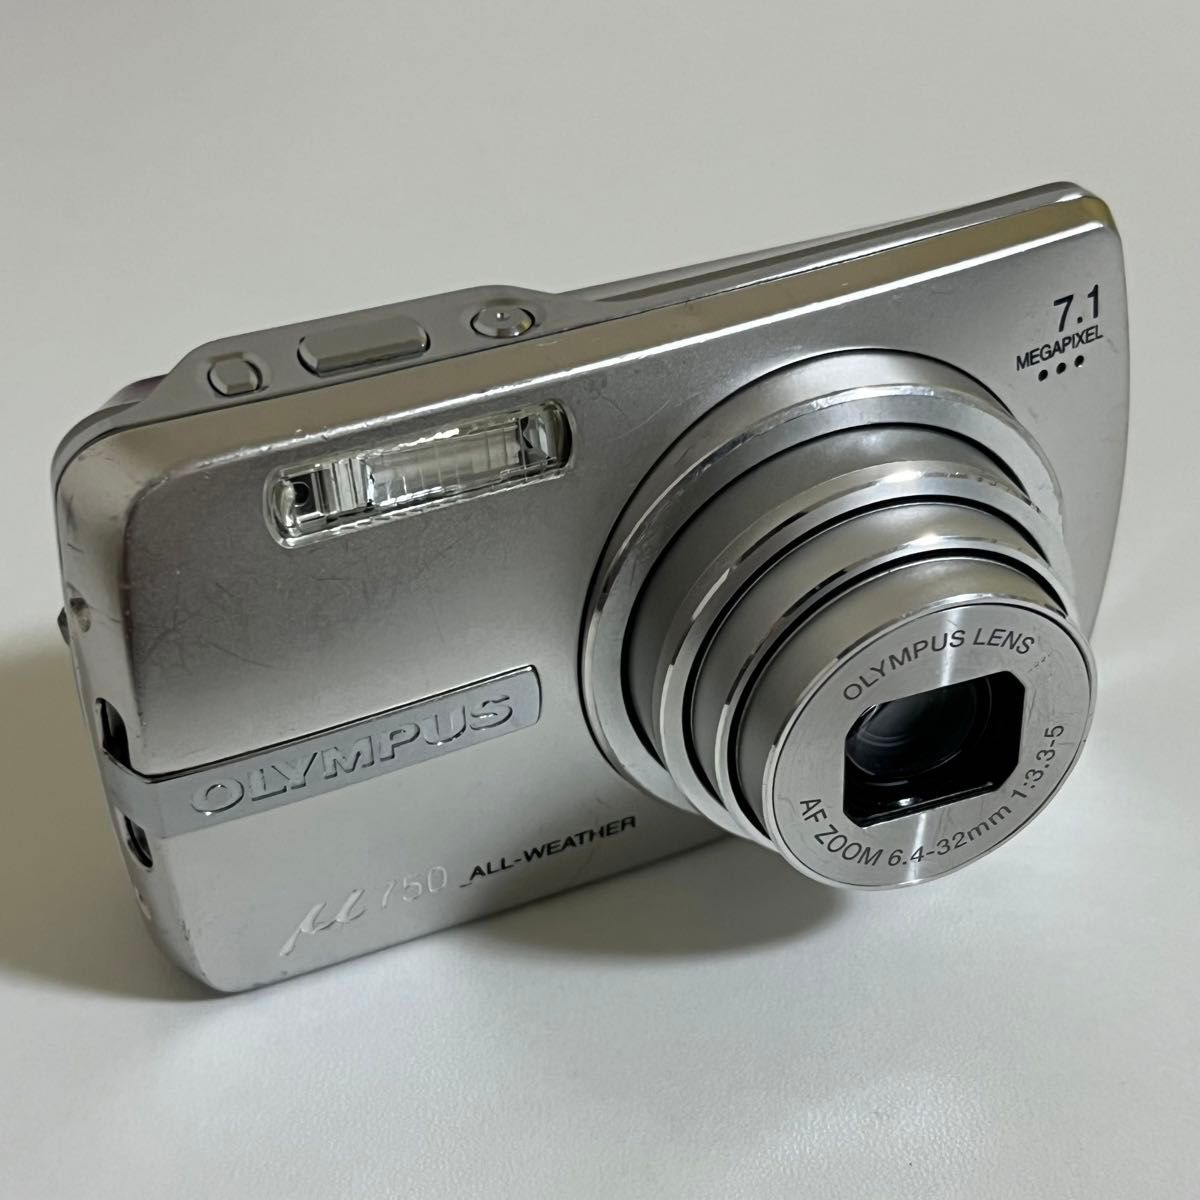 OLYMPUS μ 780 - デジタルカメラ